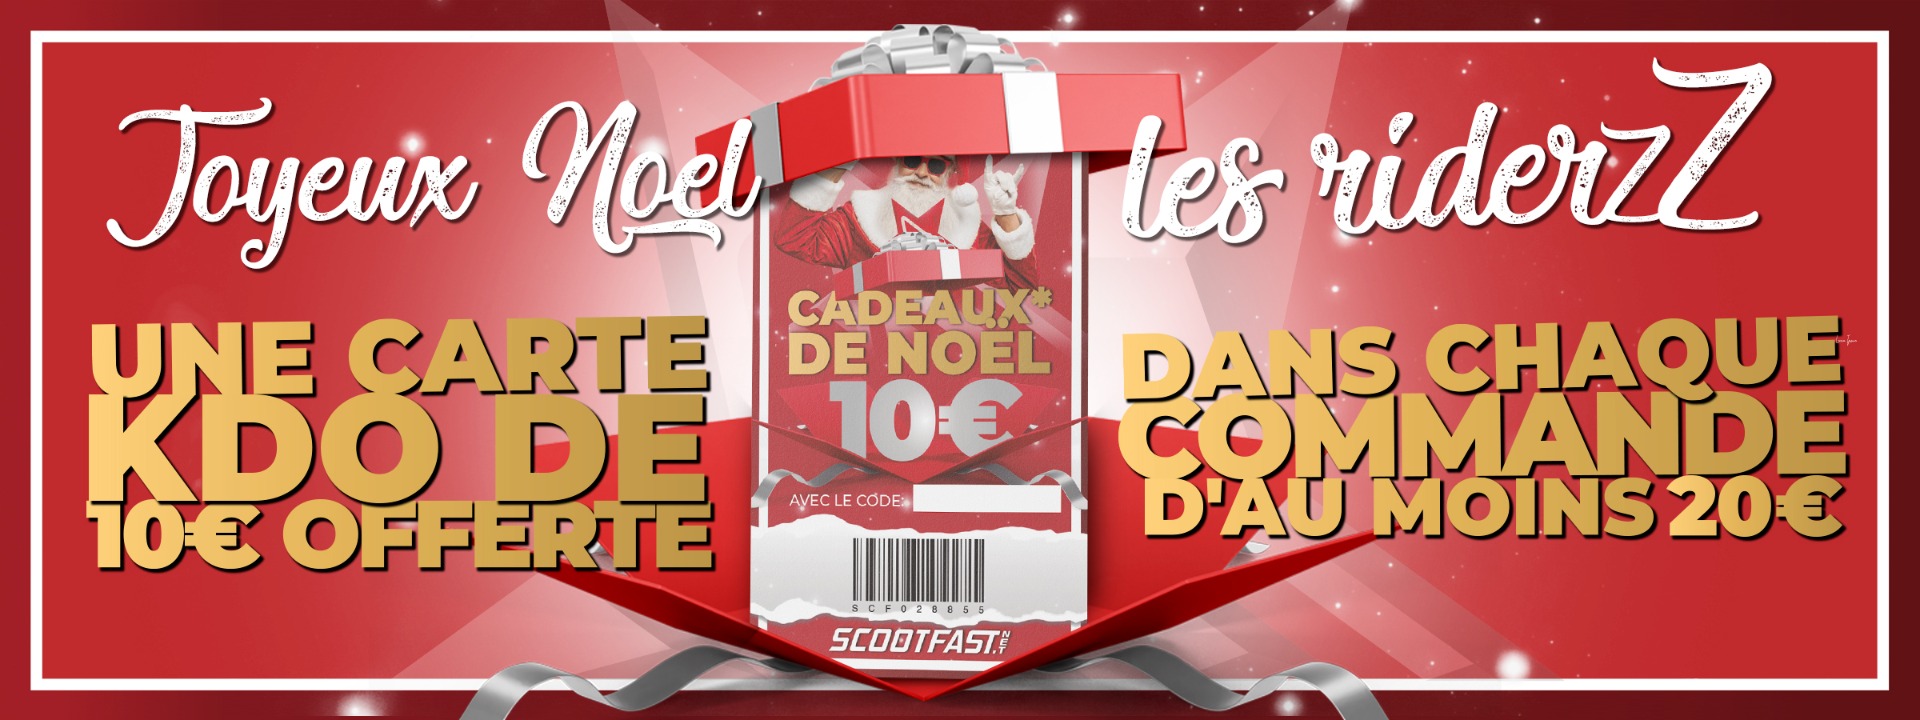 Visuel de présentation de la carte cadeau de 10€ offerte dans les colis Scootfast